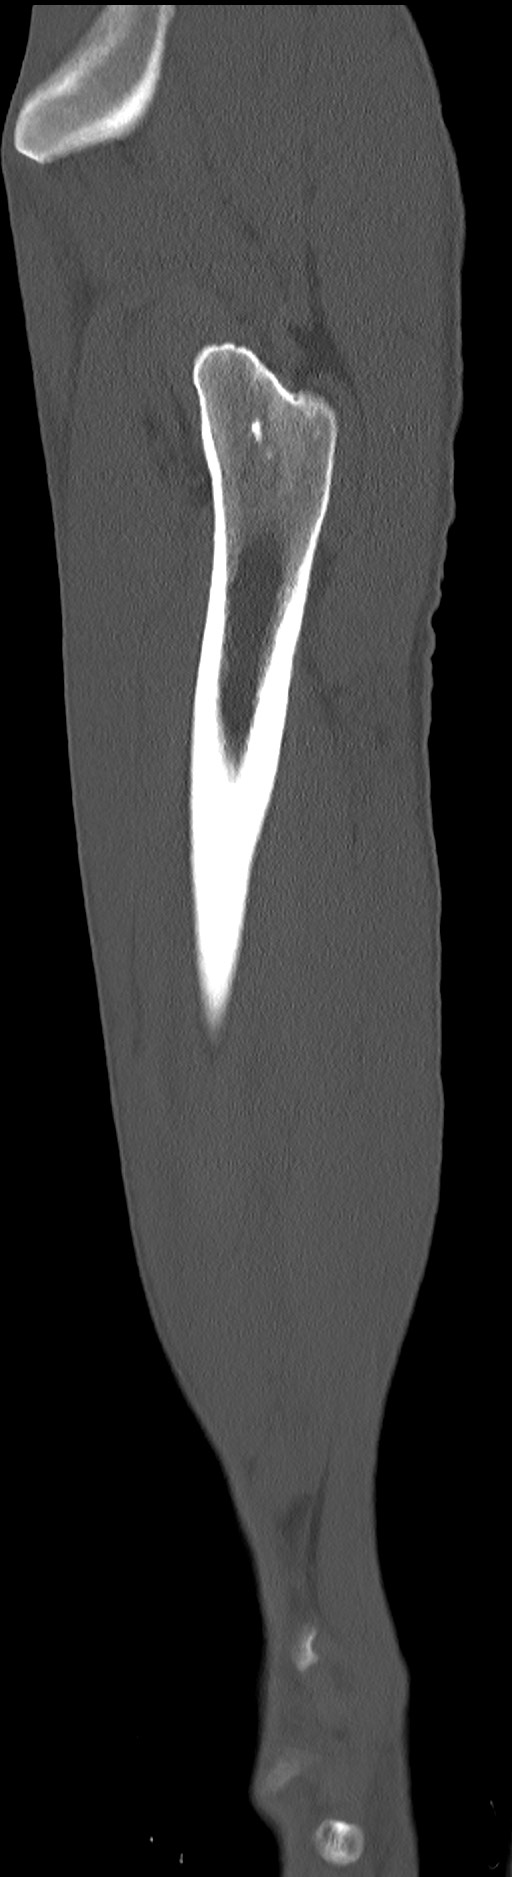 Chronic osteomyelitis (with sequestrum) (Radiopaedia 74813-85822 C 21).jpg